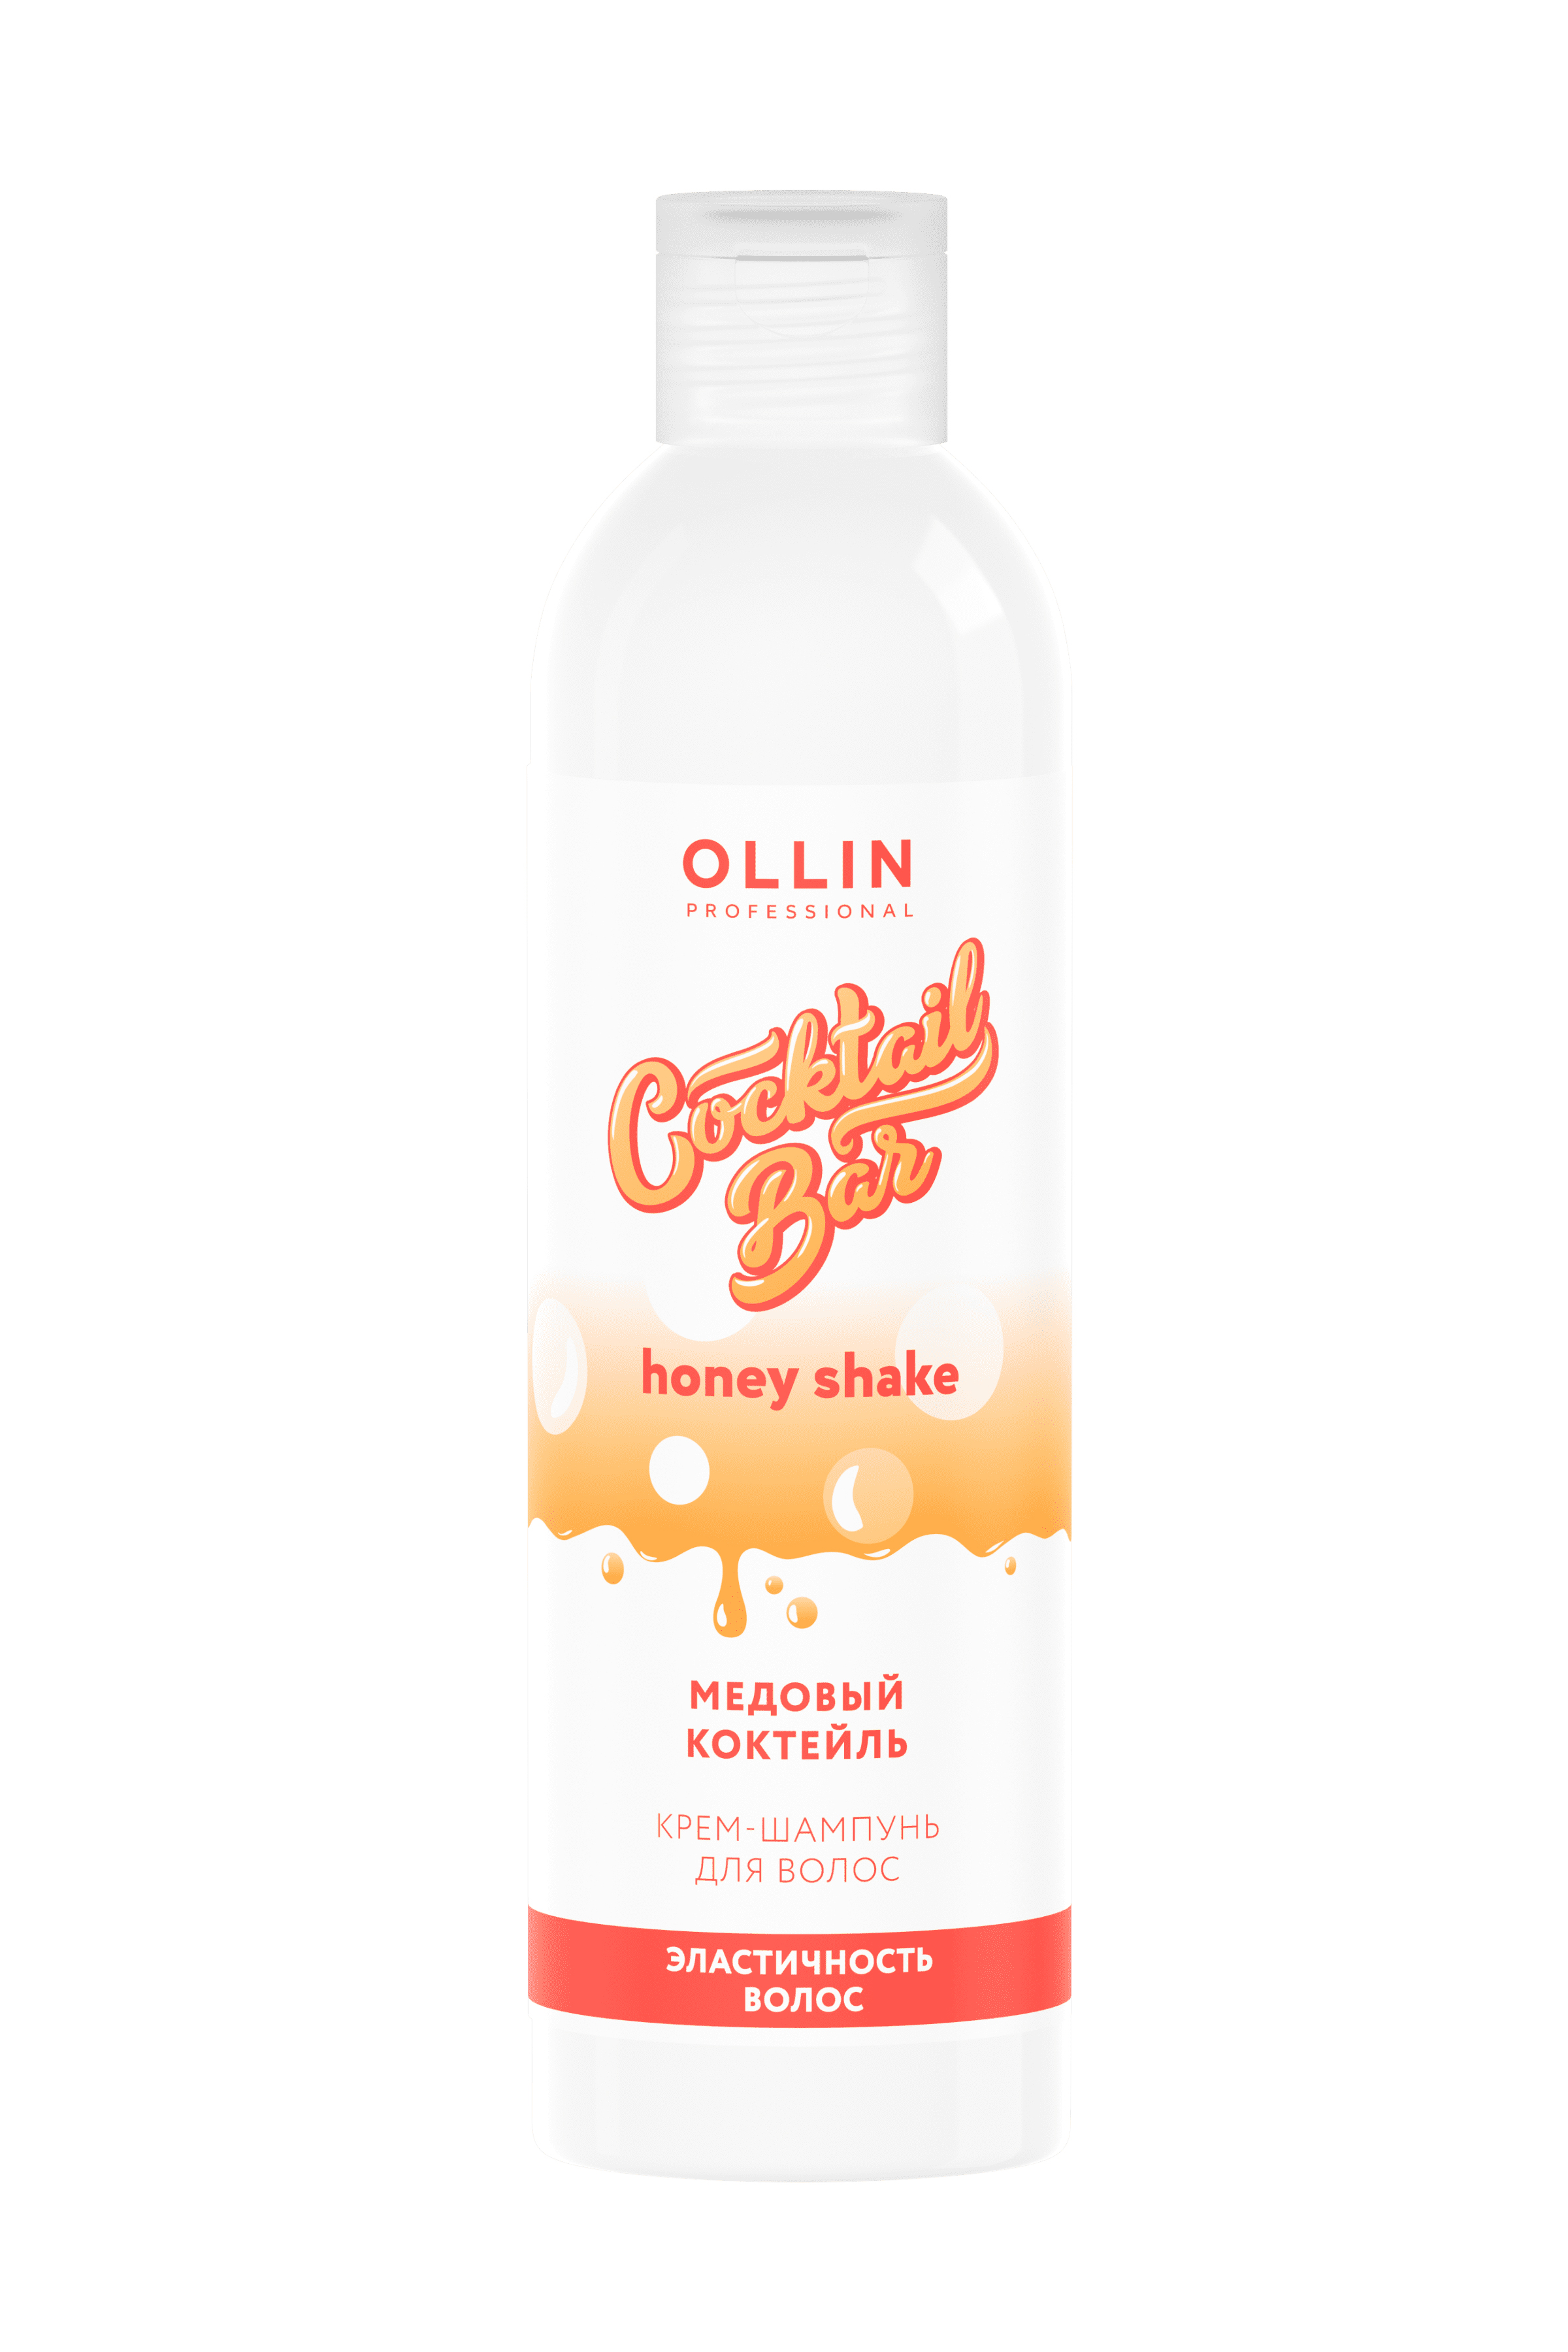 OLLIN Cocktail BAR Крем-шампунь "Медовый коктейль" гладкость и эластичность волос 400 мл